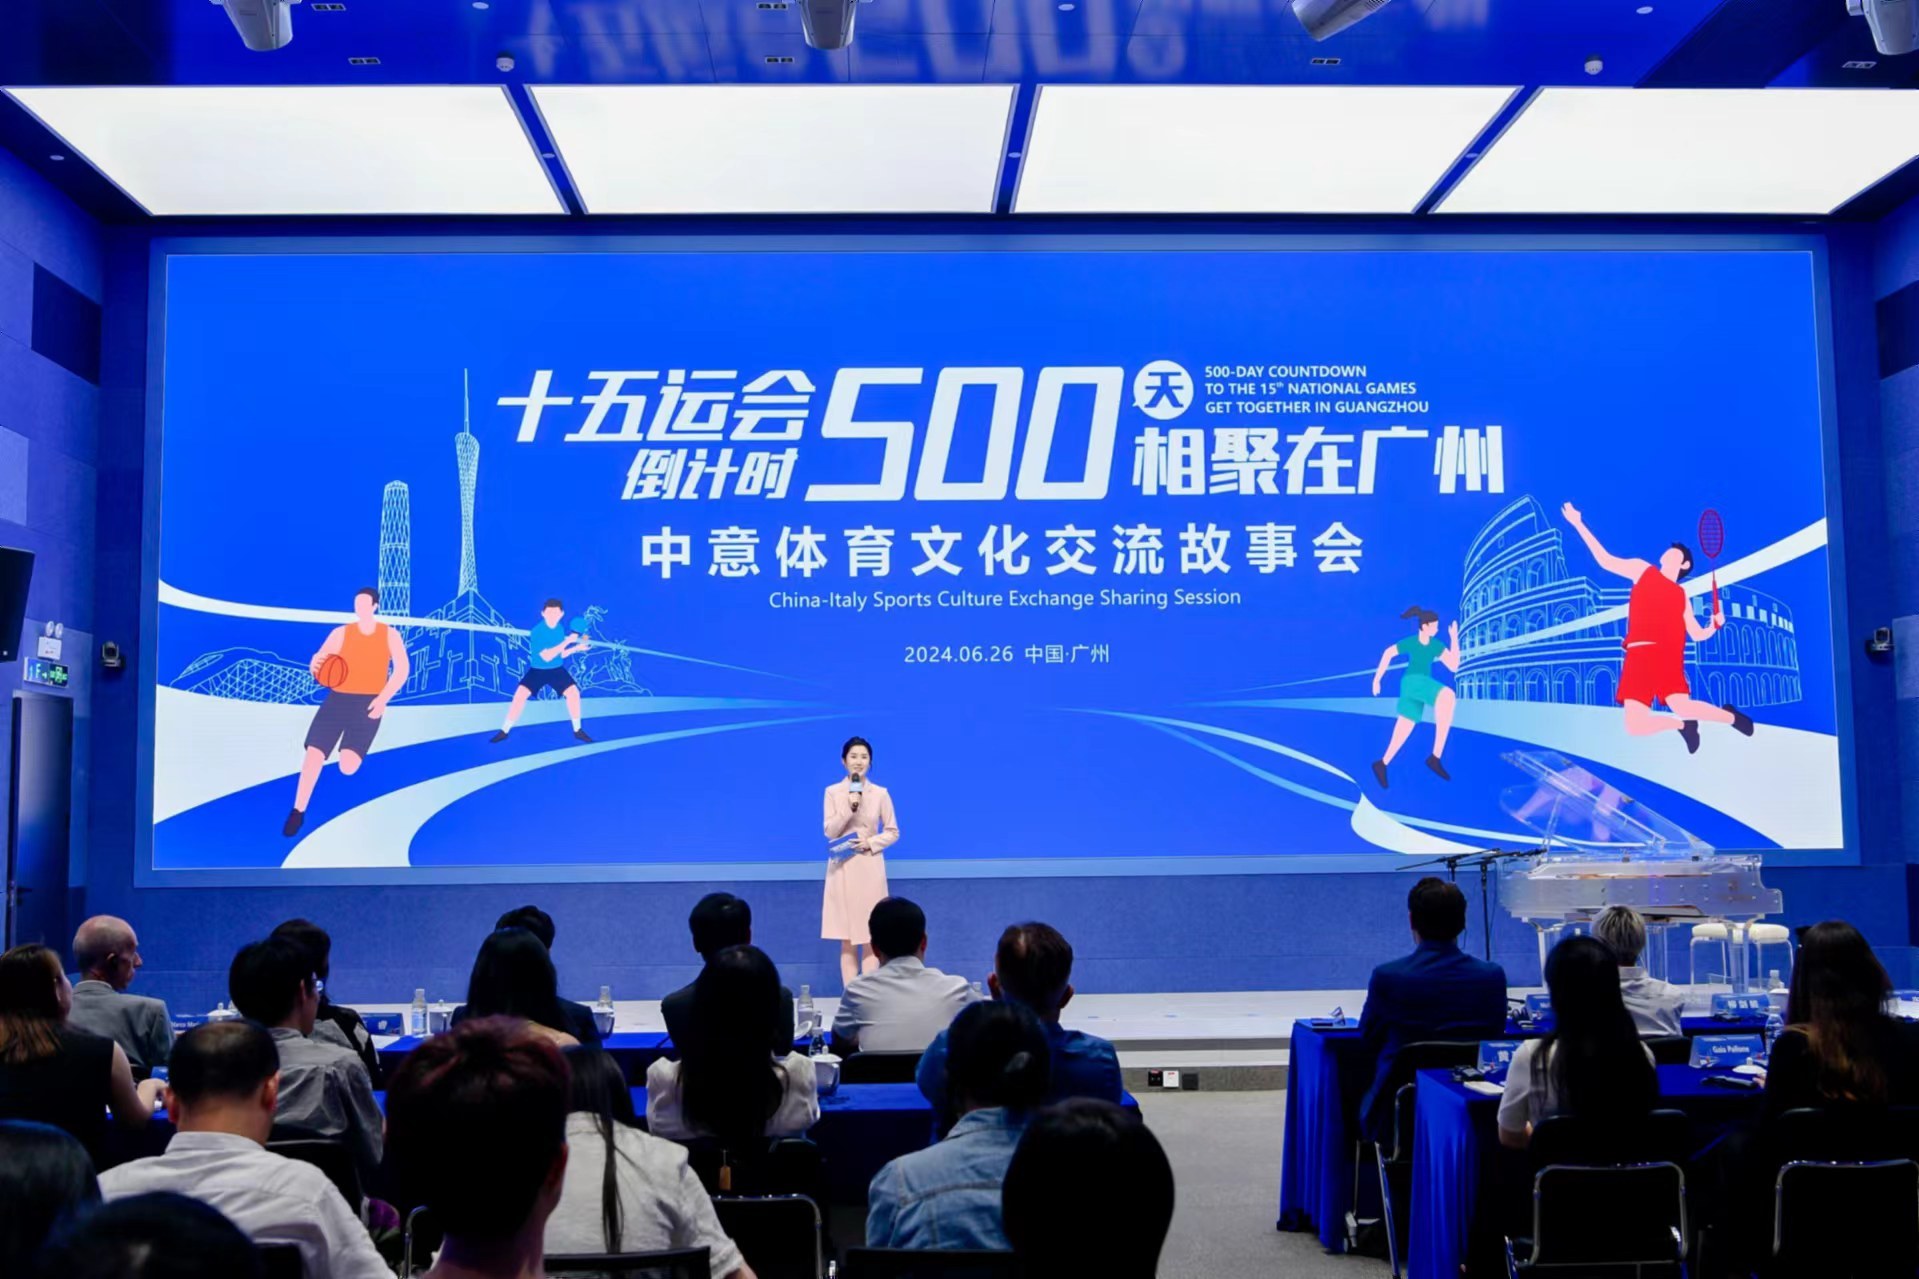 6月26日，“十五运会倒计时500天 相聚在广州——中意体育文化交流故事会”成功举办。